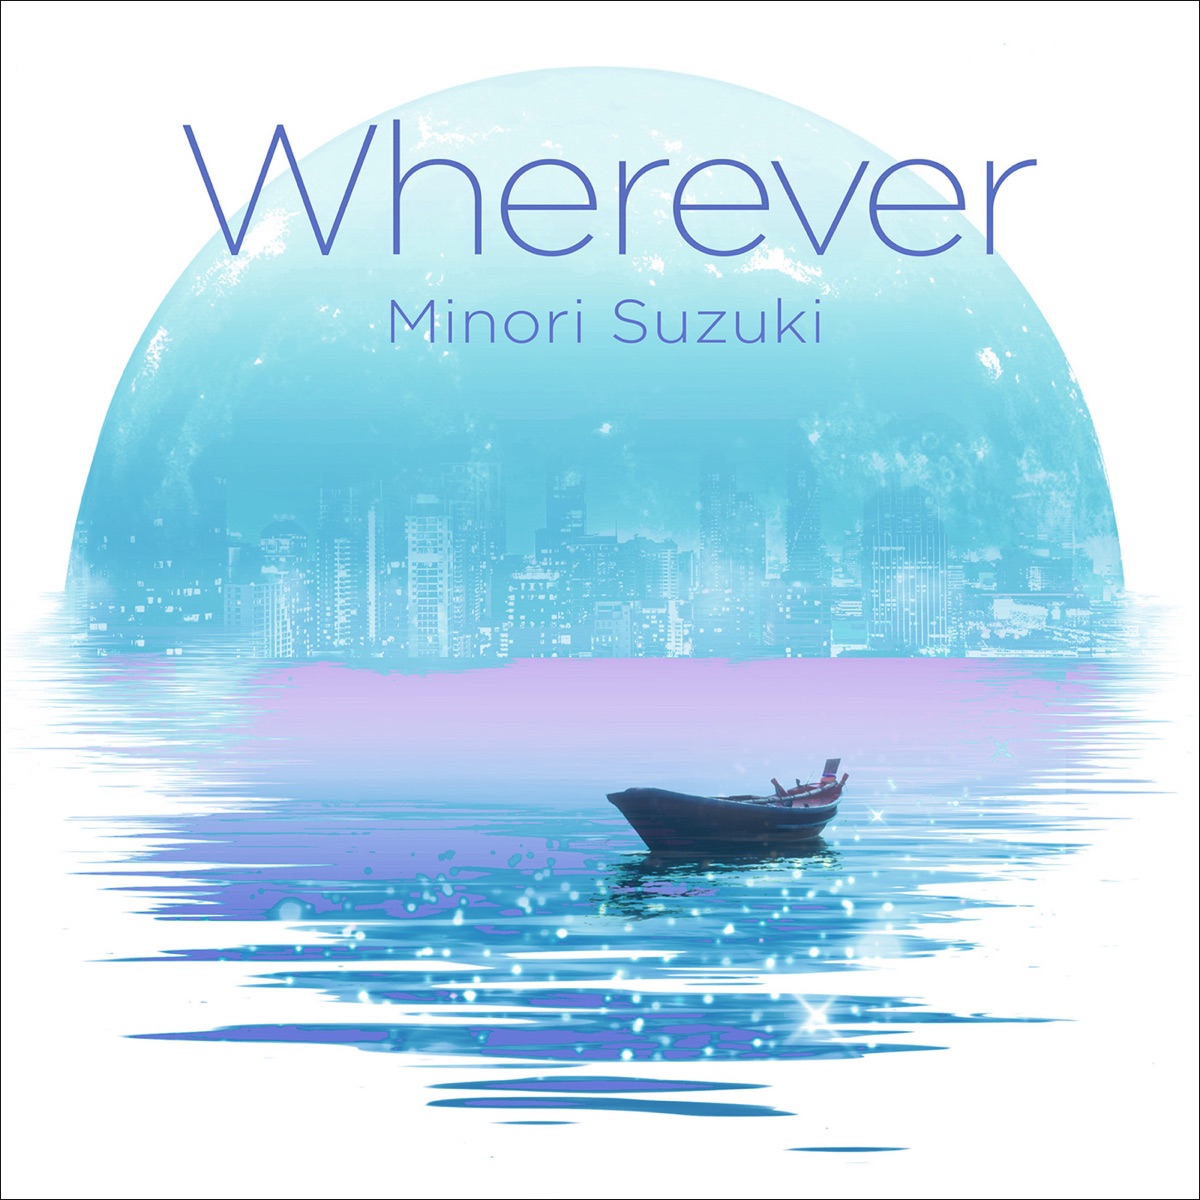 『鈴木みのり - Wherever』収録の『Wherever』ジャケット